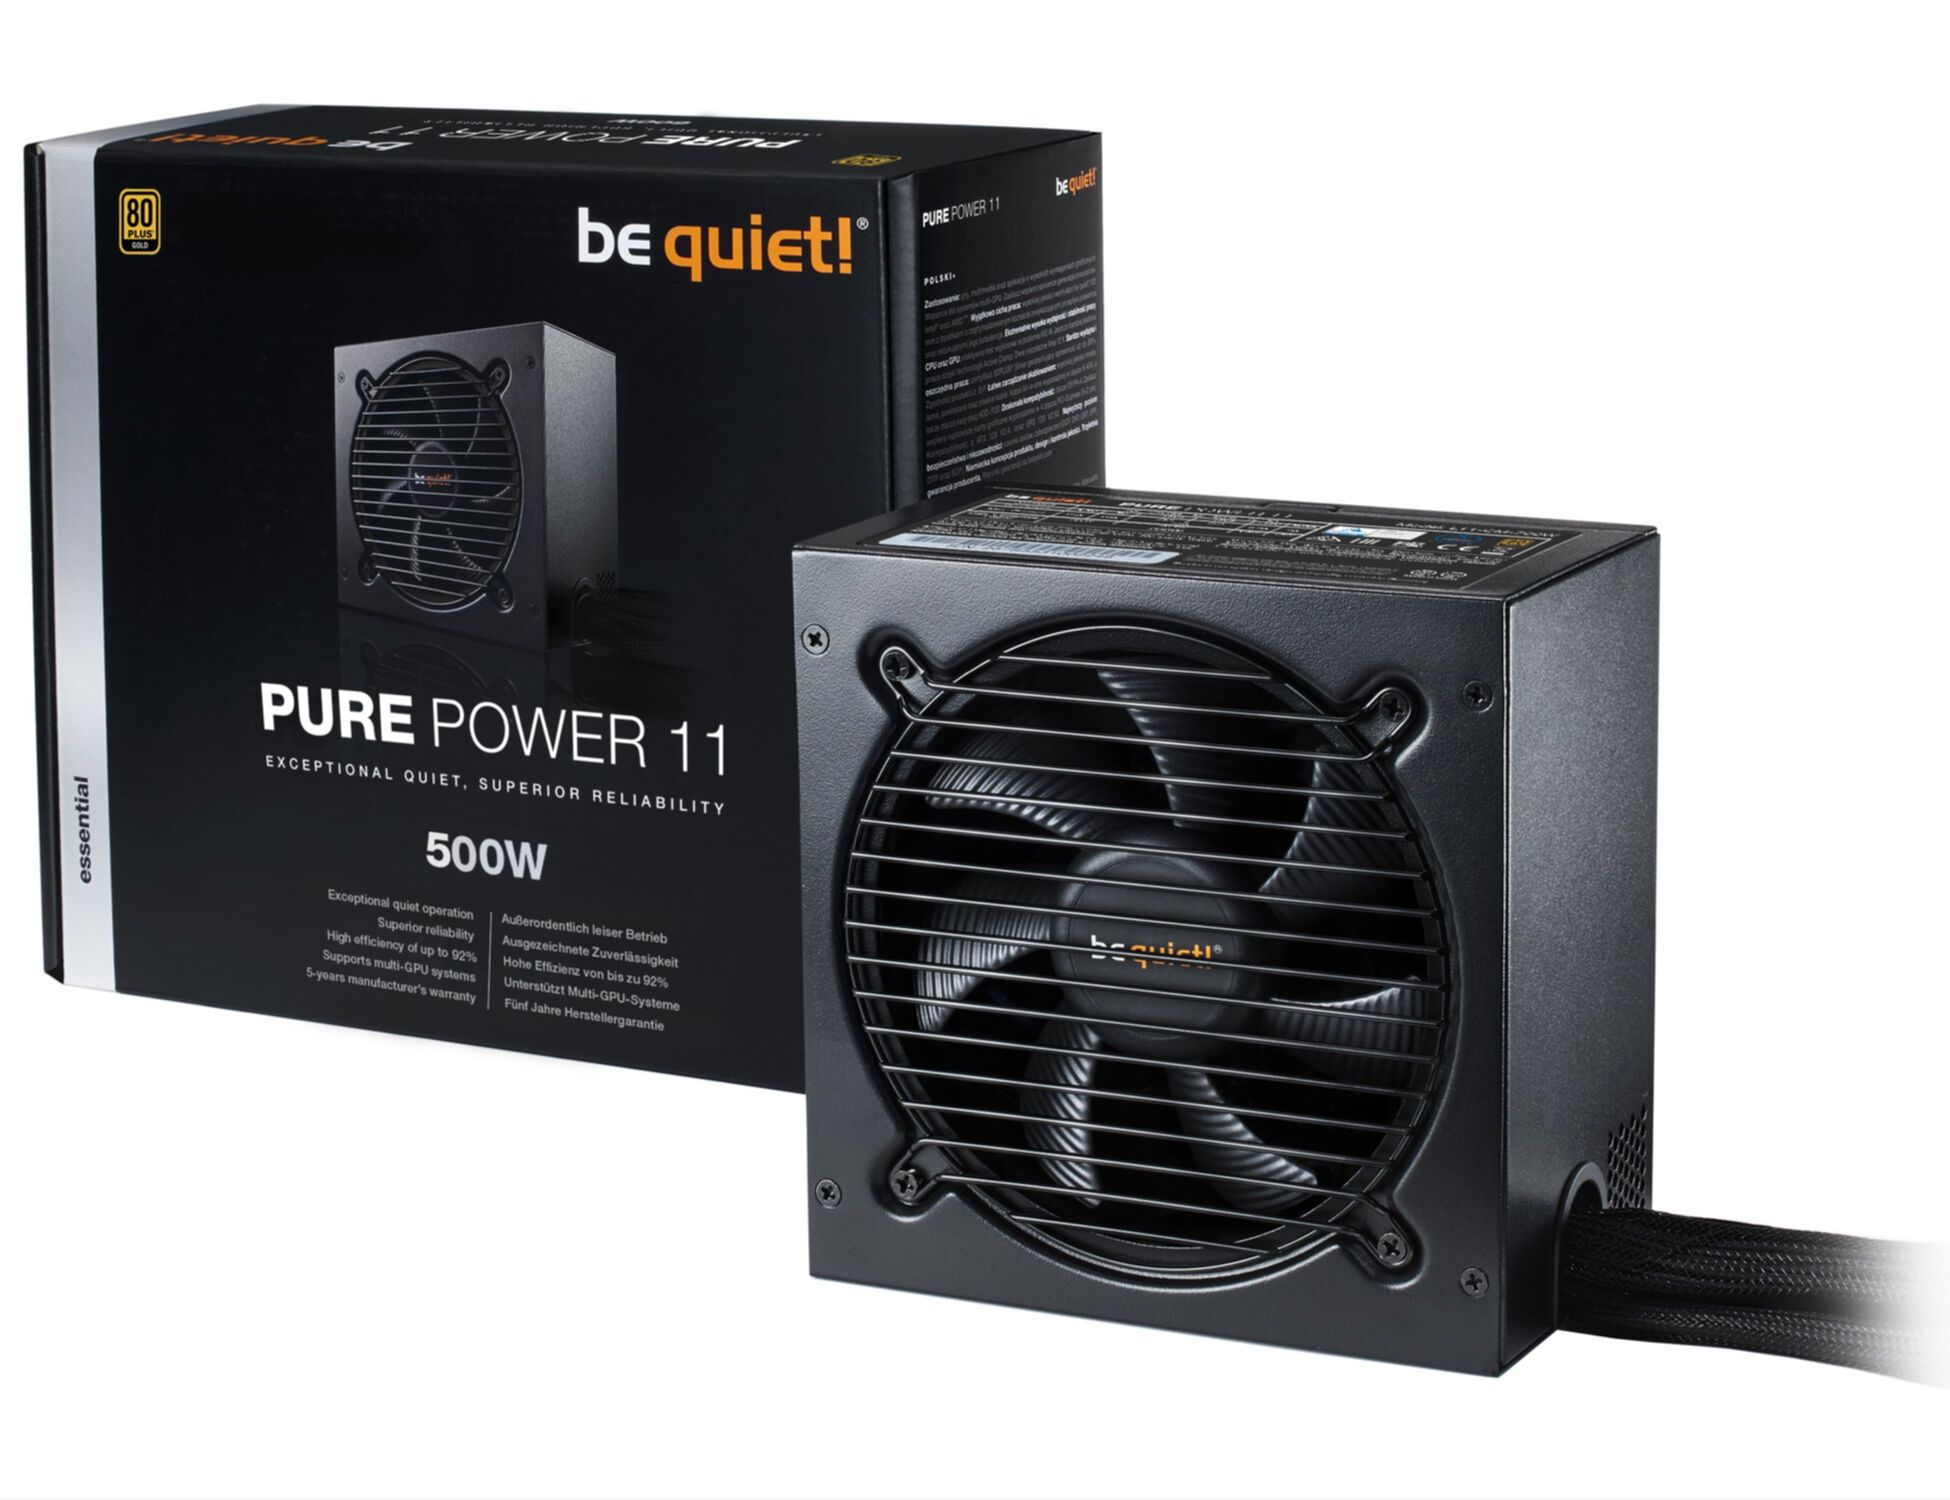 BE QUIET! Netzteil PC 500W Watt 500 Gold Power 80PLUS Pure Zertifizierung 11